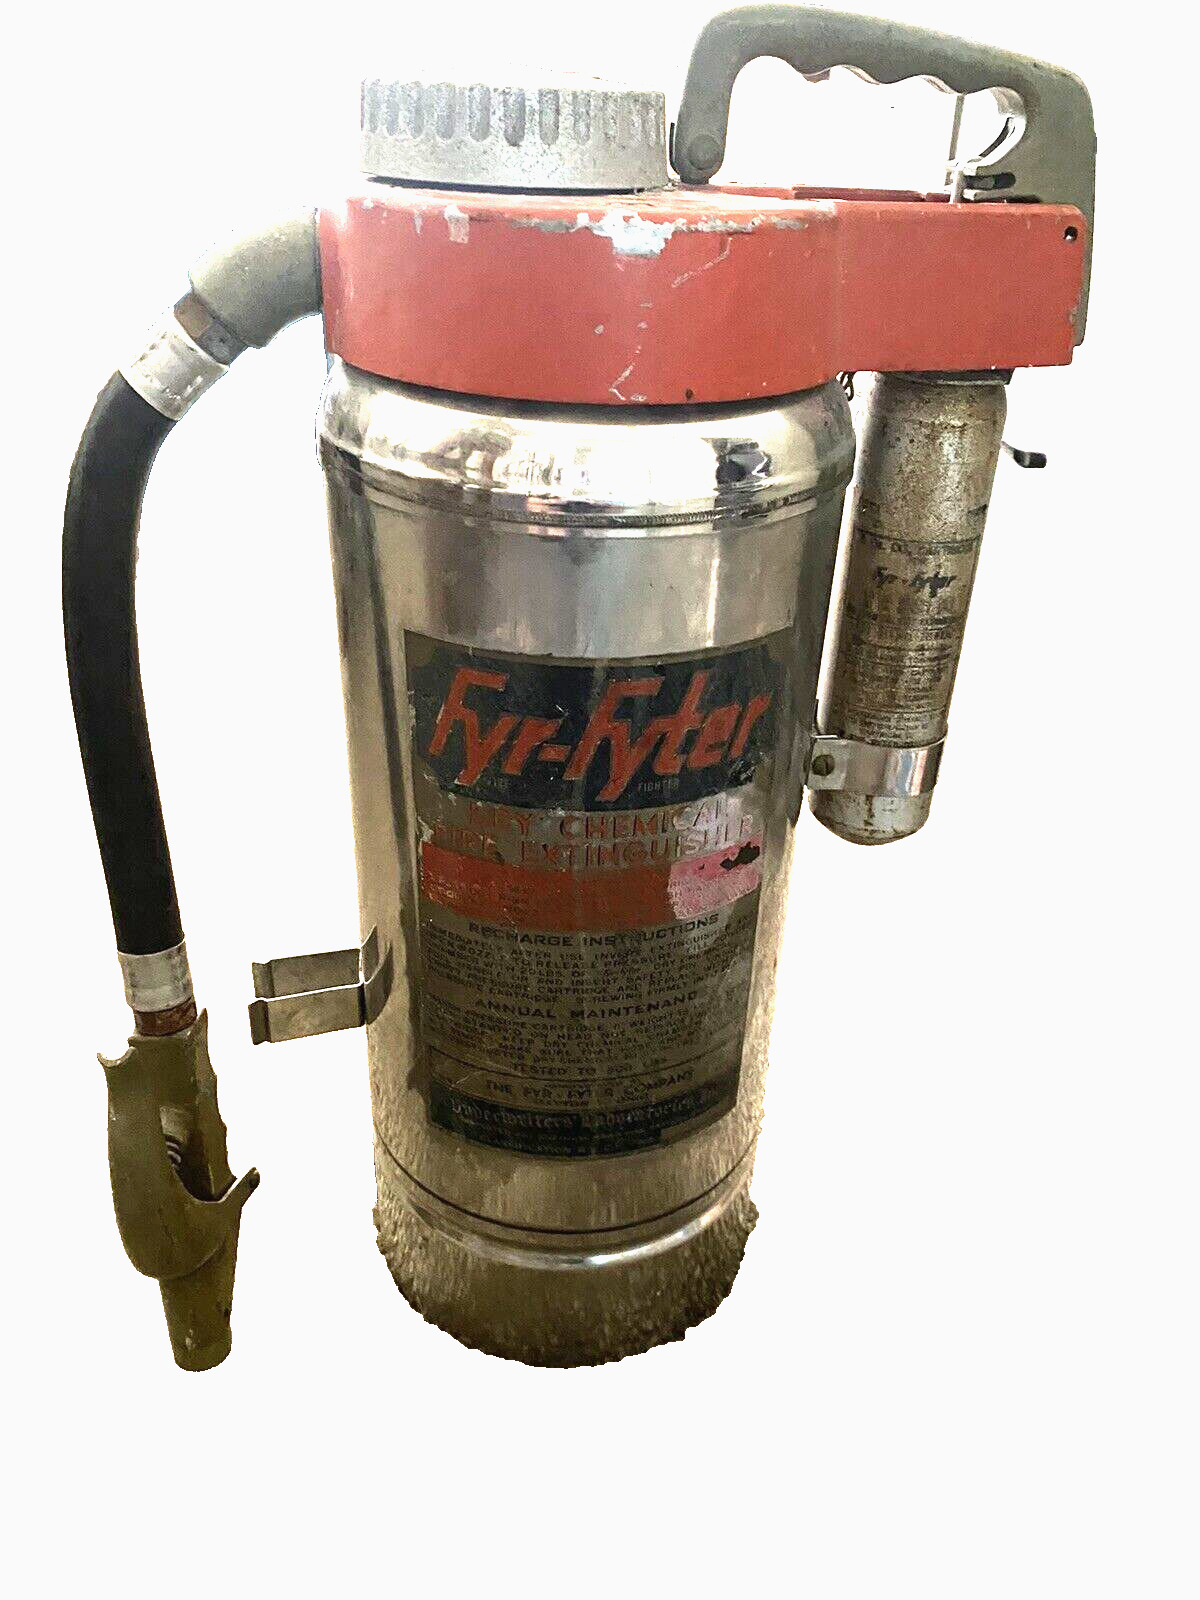 Empty FYT-Fyter vintage fire extinguisher